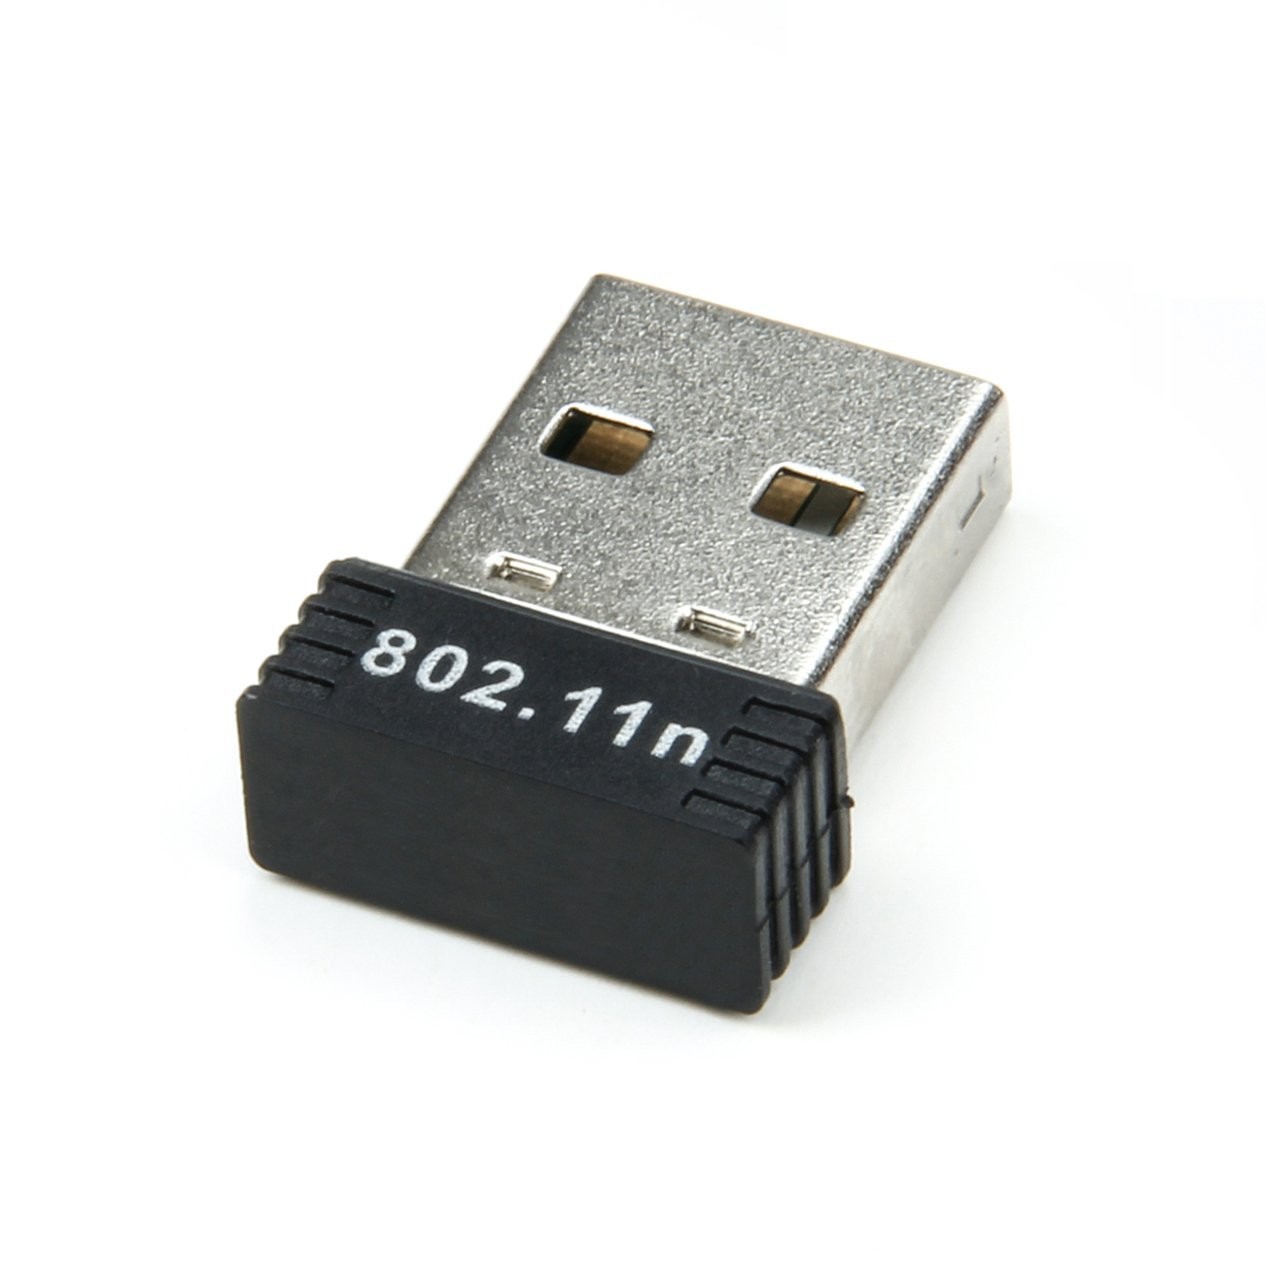 Adaptateurs USB sans fil : Wi-Fi et réseautage